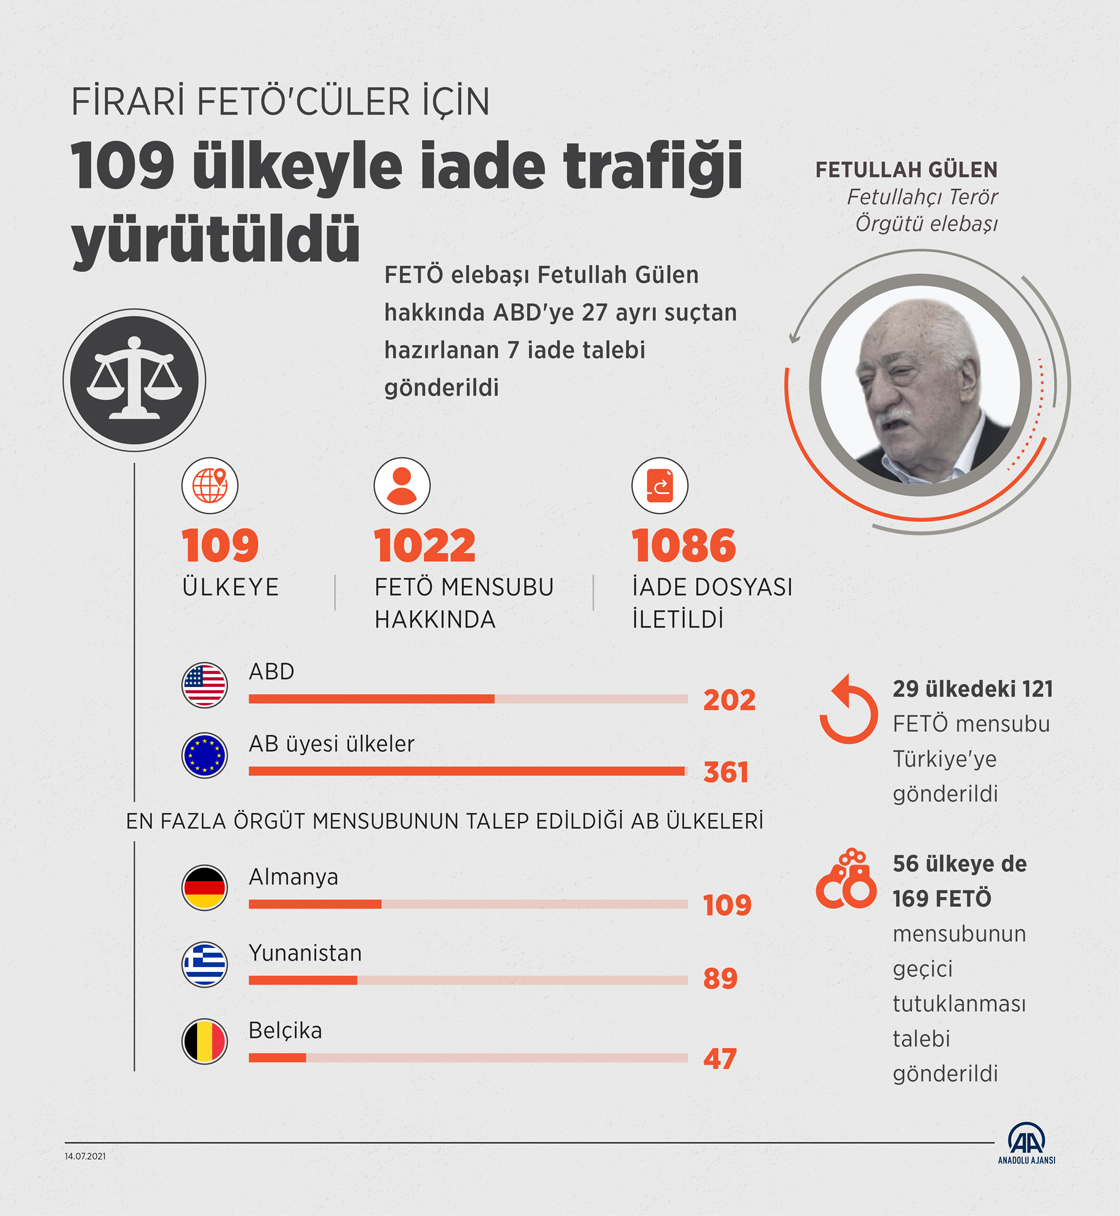 Firari FETÖ'cüler için 109 ülkeyle iade trafiği yürütüldü